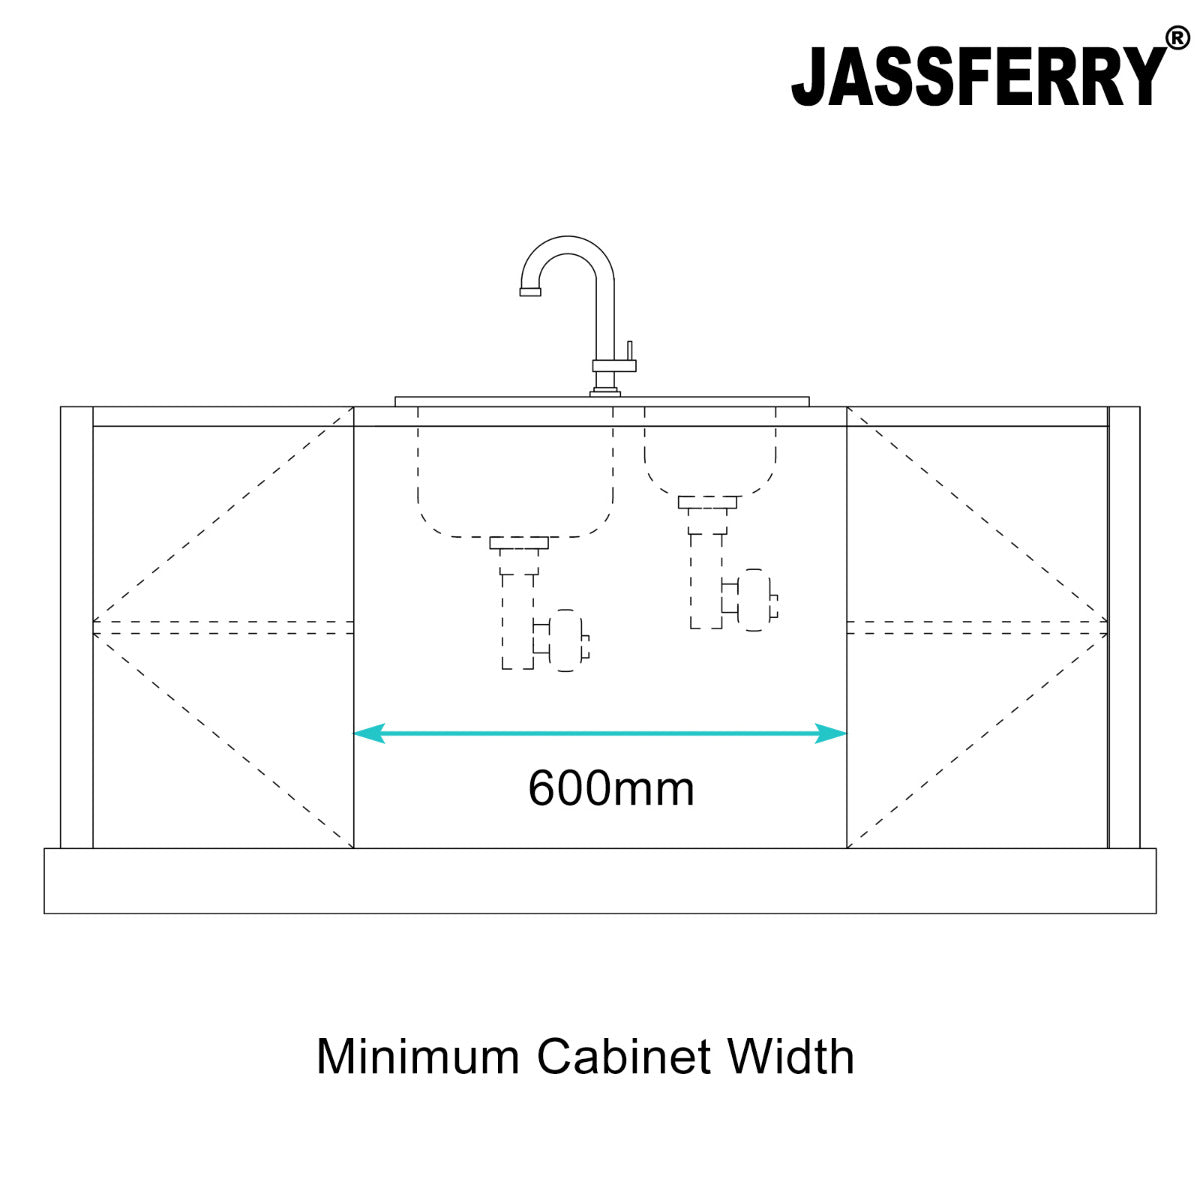 JassferryJASSFERRY Stainless Steel Kitchen Sink 1.5 Bowl Undermount Righthand Smaller Bowl 580 X 440 mmKitchen Sinks